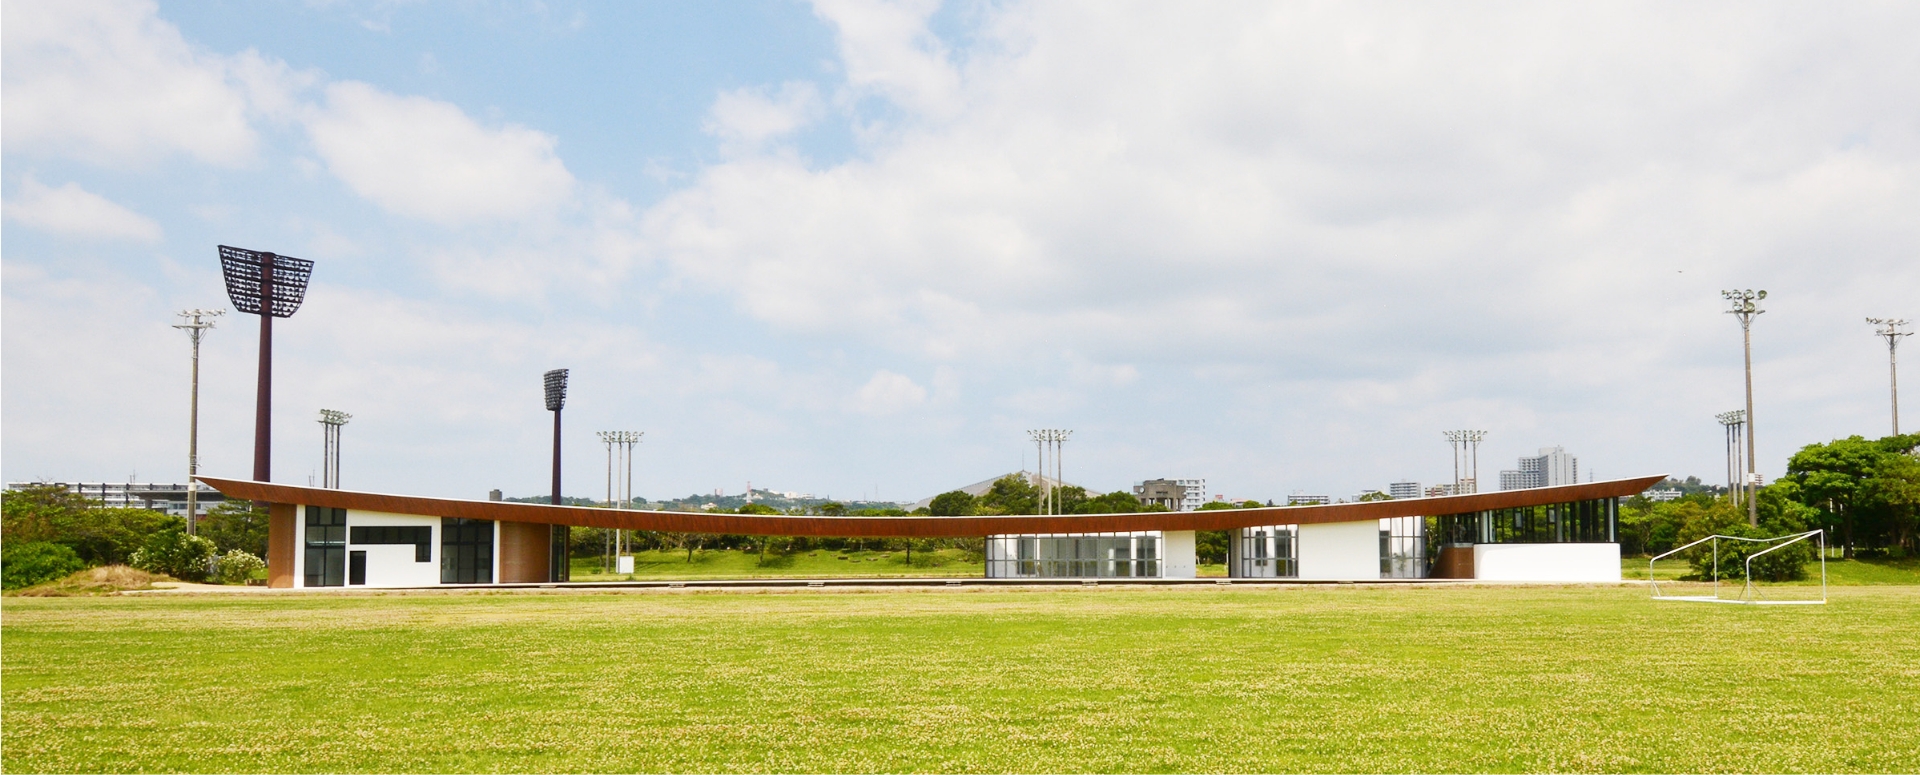 建築設計事例 沖縄県総合運動公園 サッカー・ラグビー場 蹴球場 クラブハウス 外観